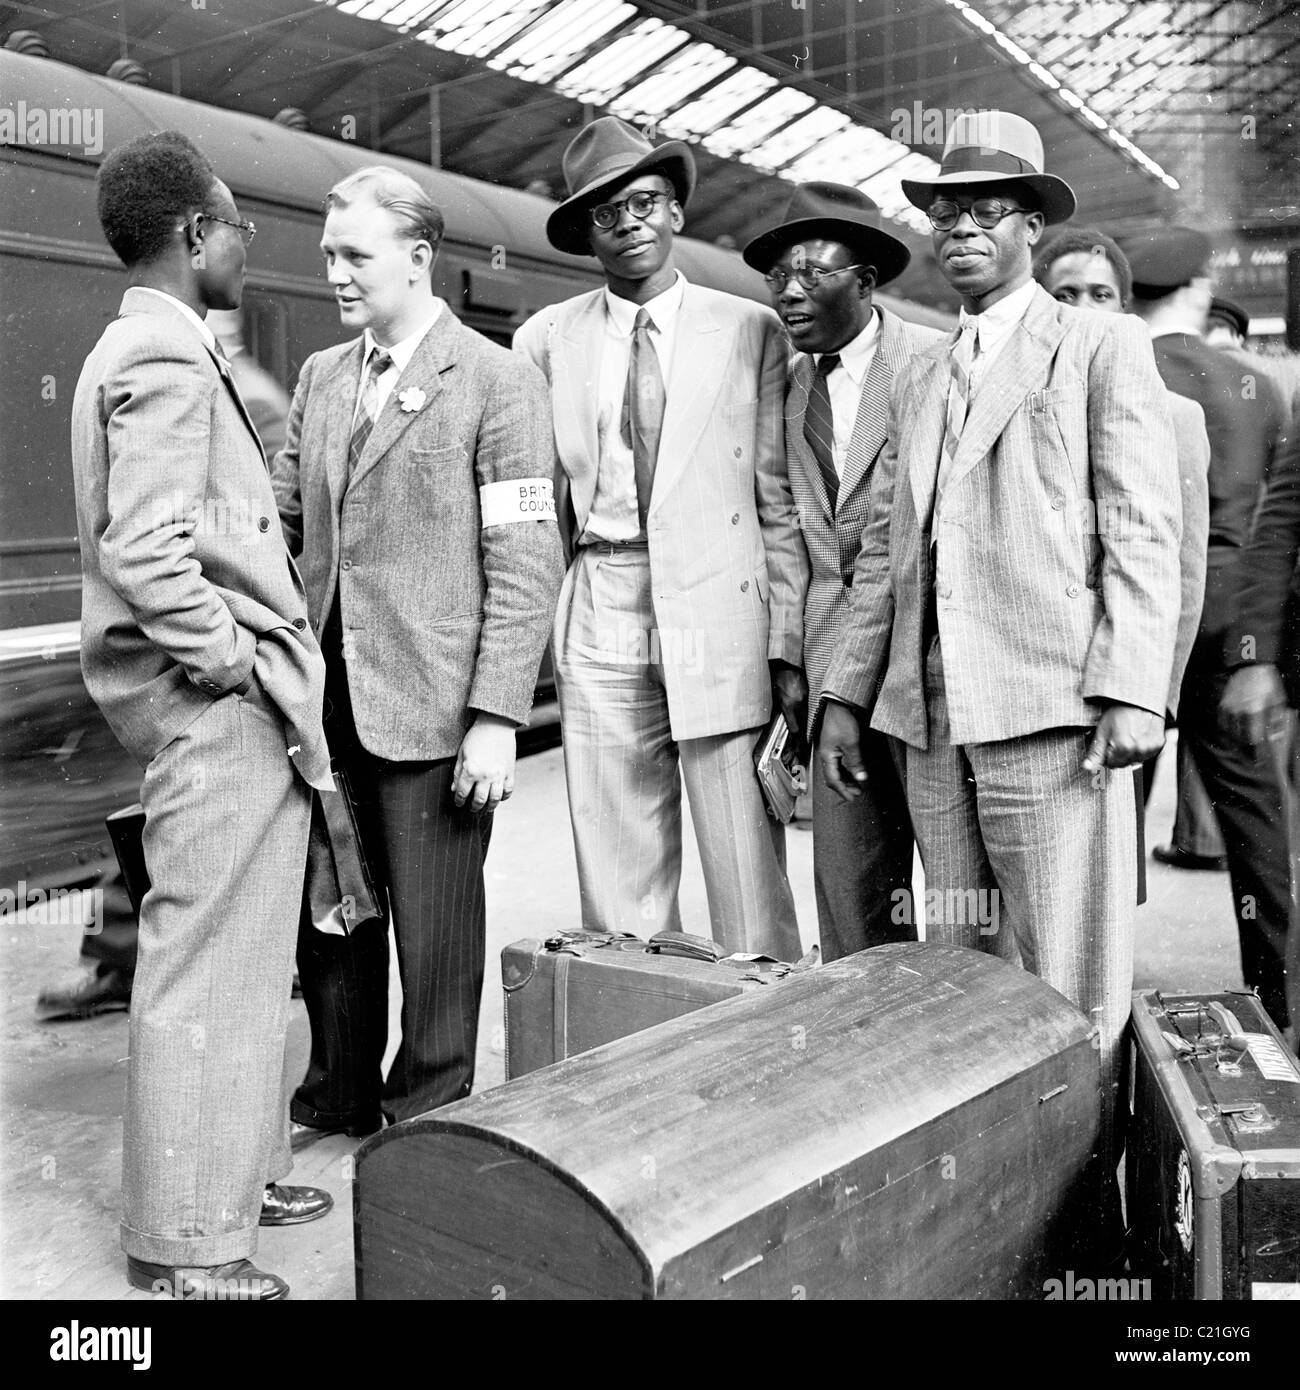 1950, un fonctionnaire du British Council accueille des immigrants de sexe masculin venant des Caraïbes à la gare de Victoria, Londres, Angleterre, Royaume-Uni. Banque D'Images